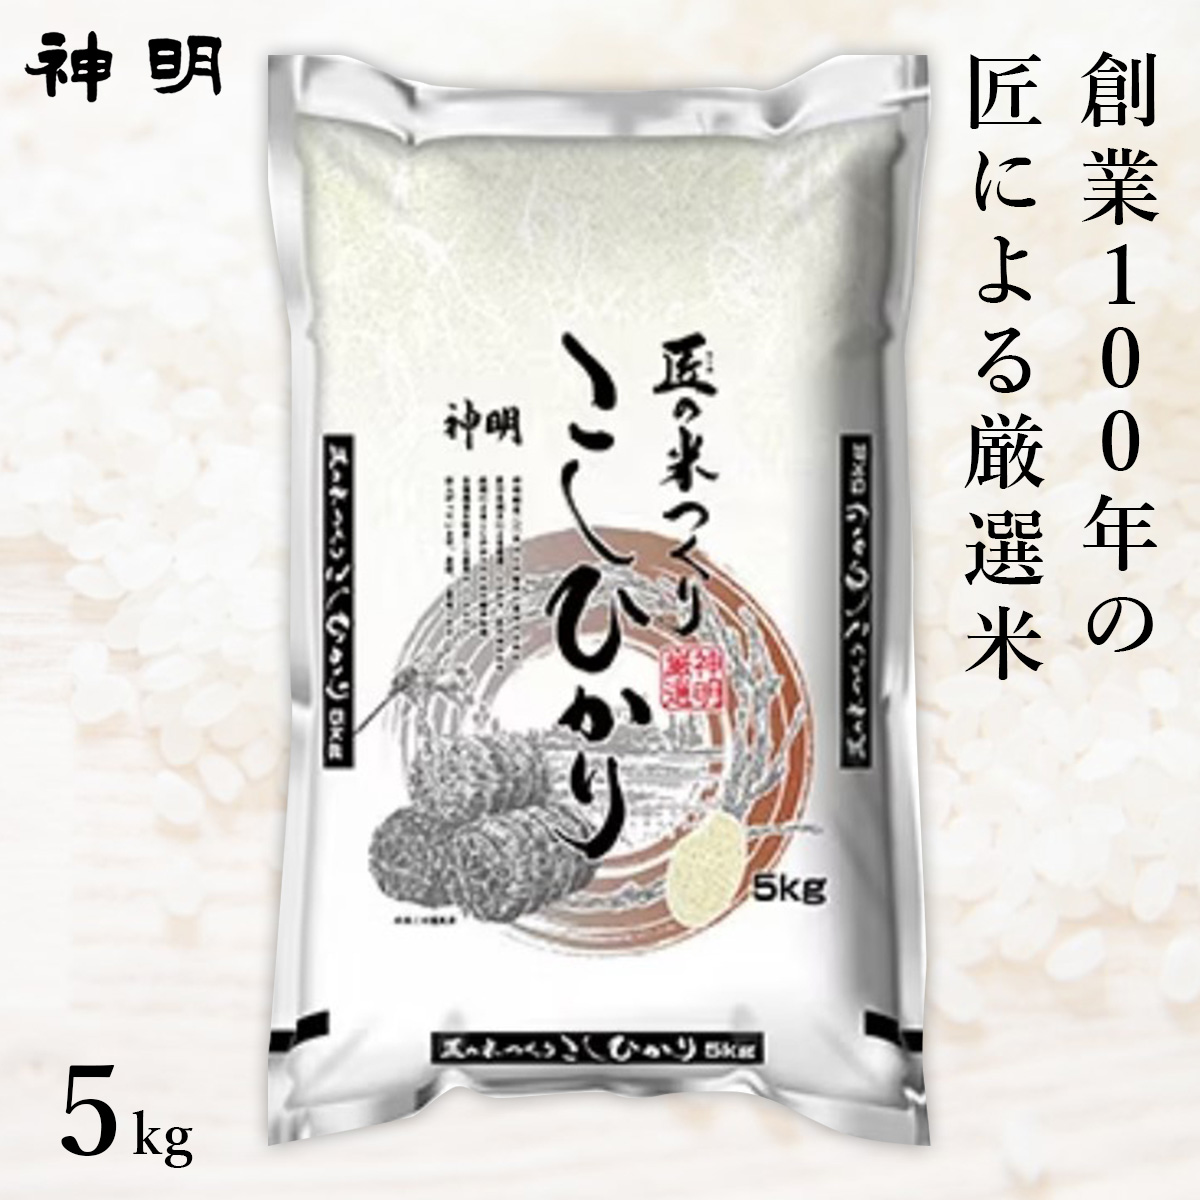 【送料無料 + 18】○匠のお米 コシヒカリ 5kg(1袋)